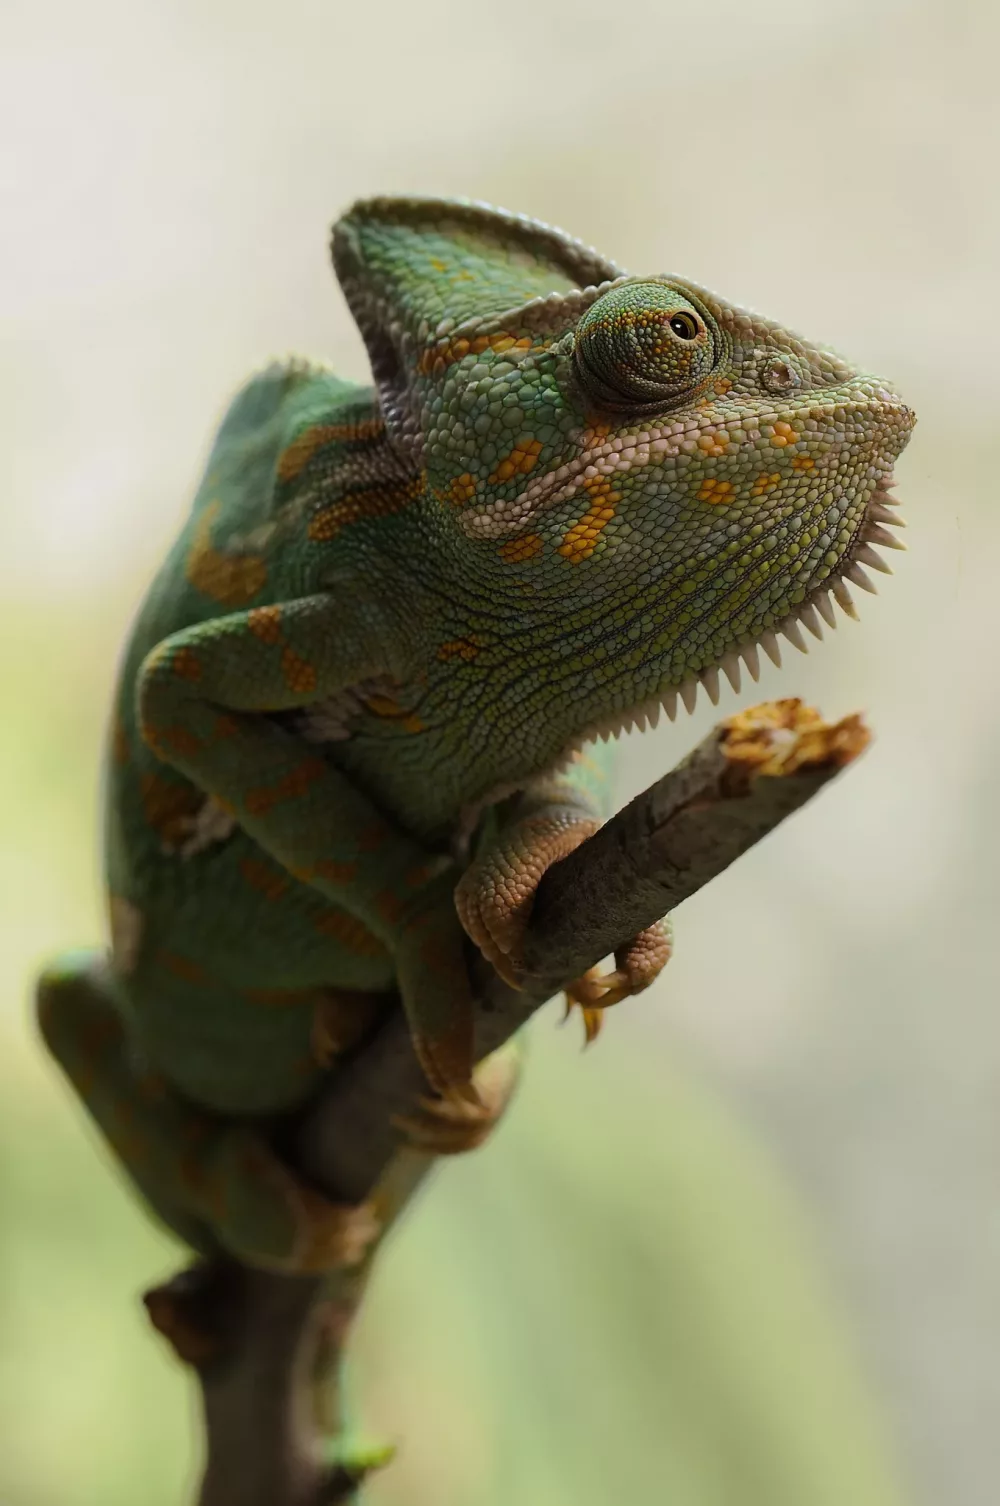 large chameleon on a stick